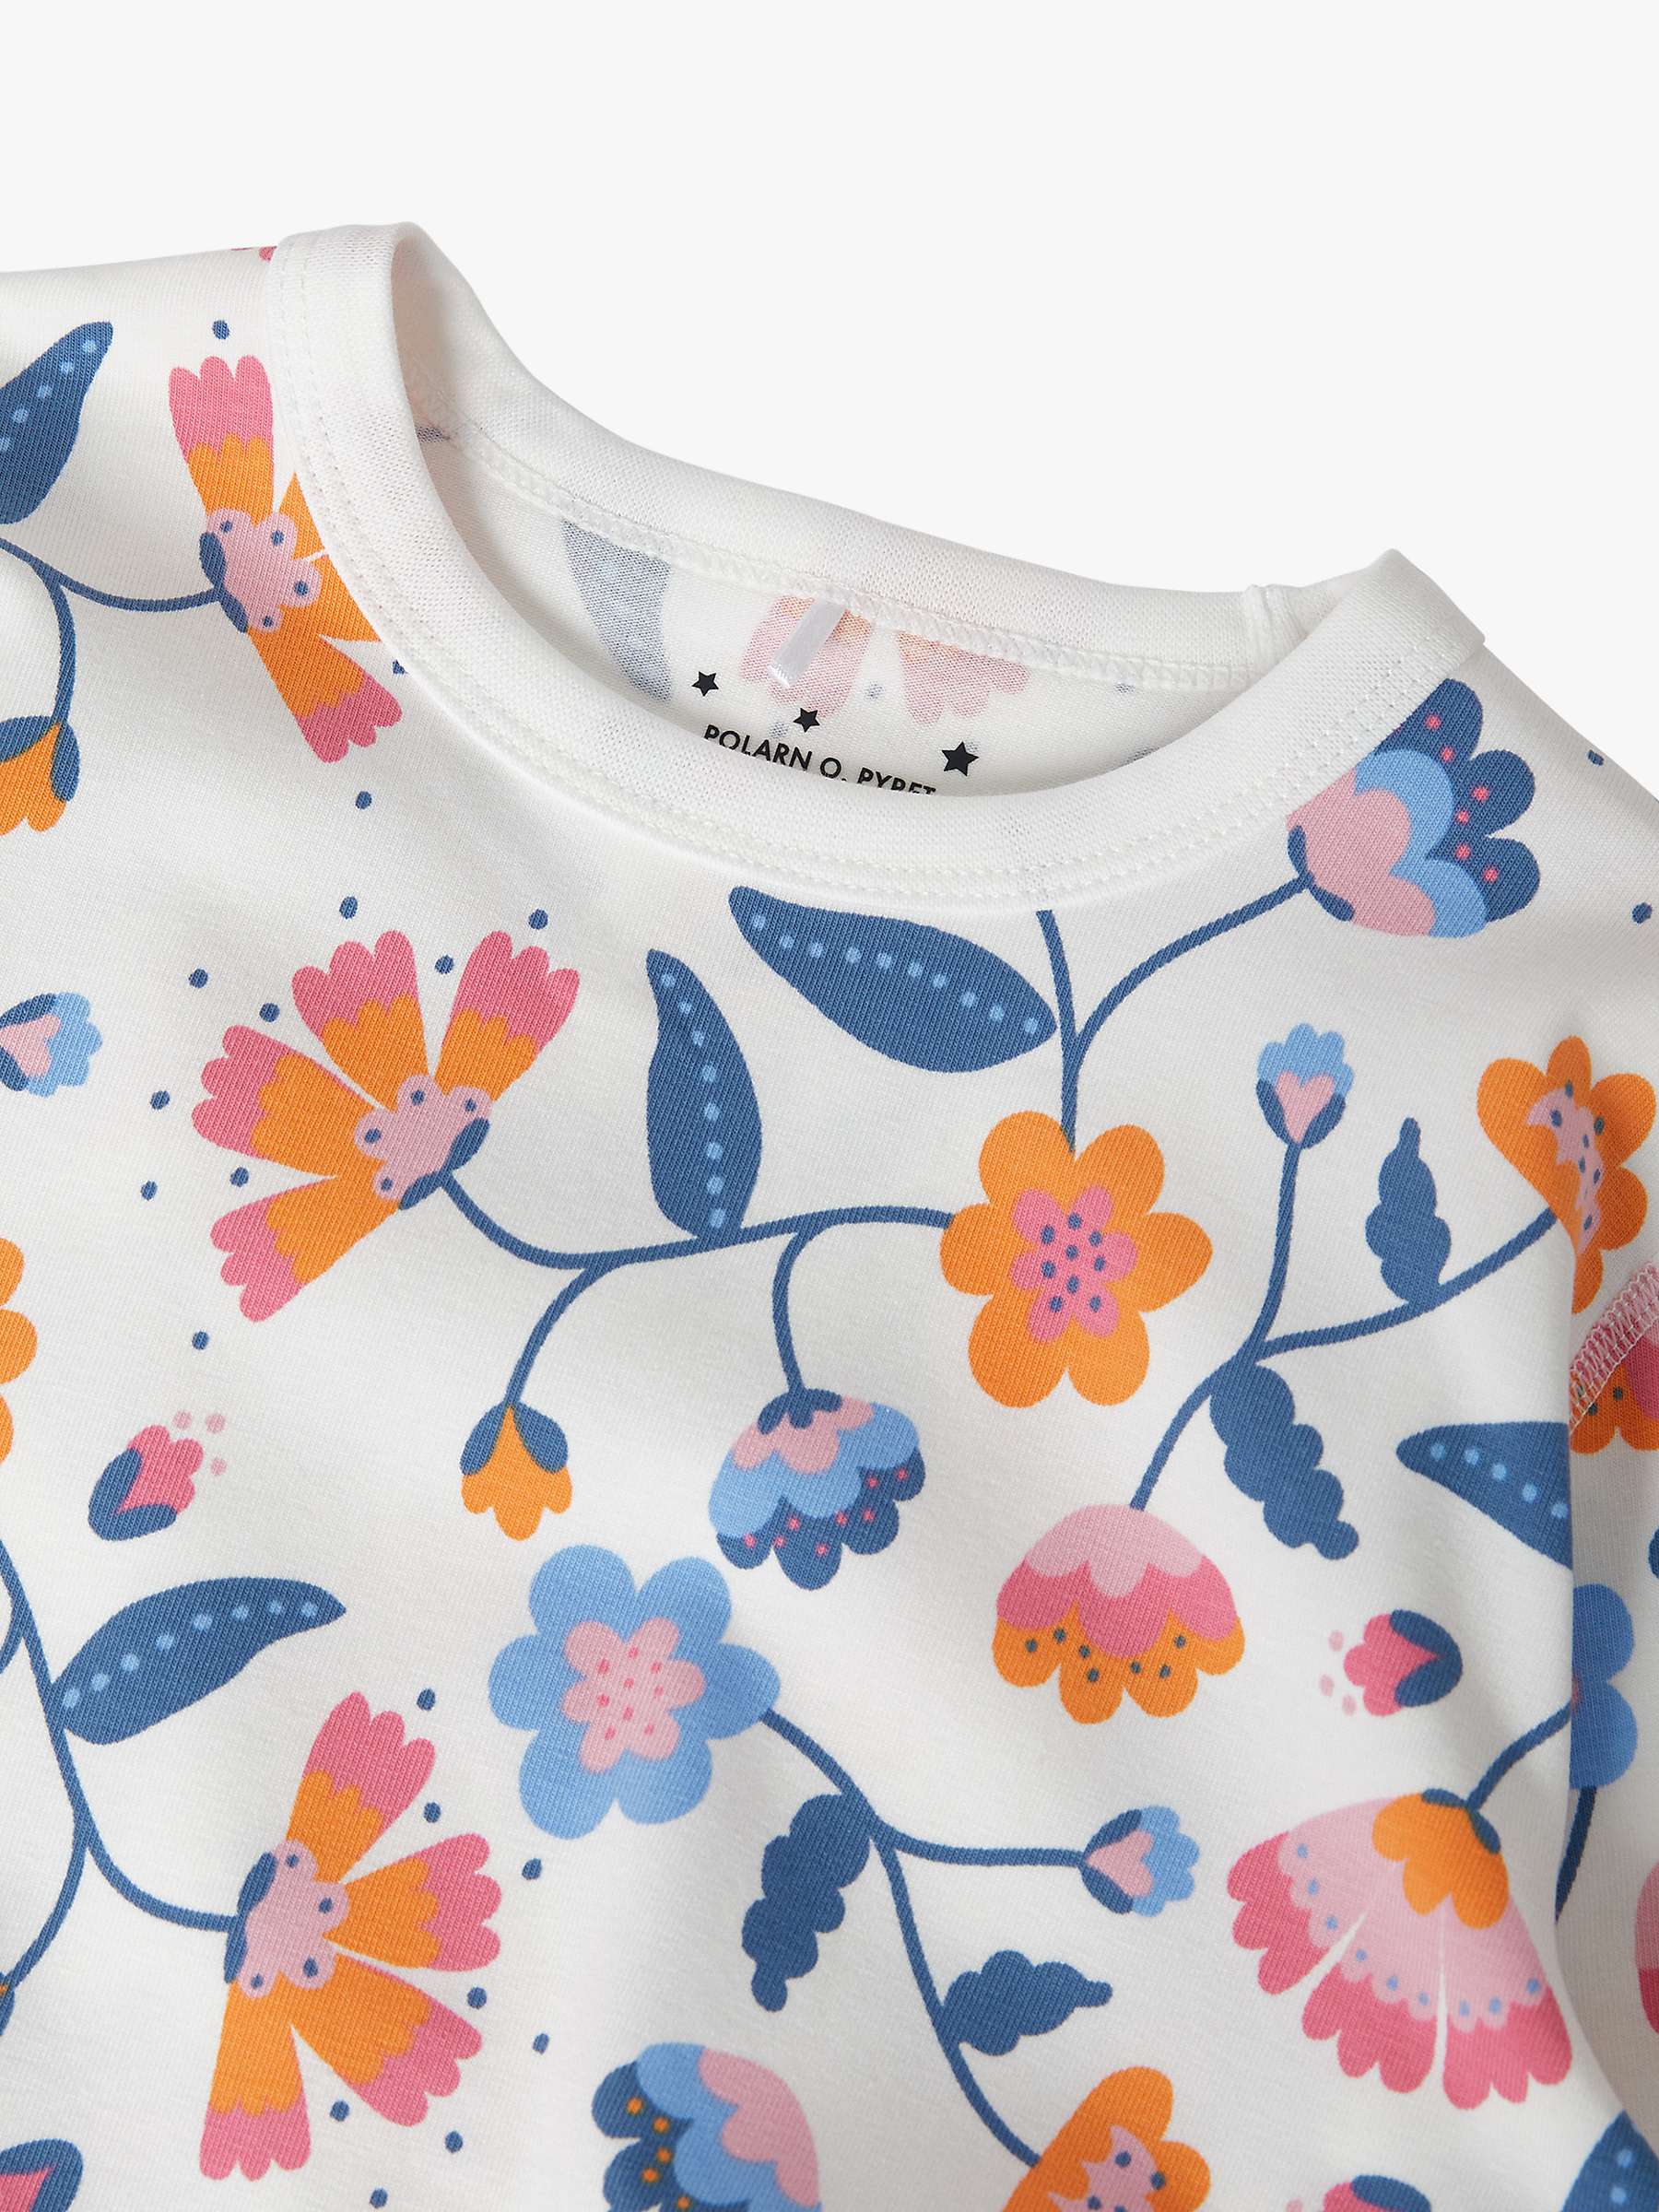 Buy Polarn O. Pyret Kids' Organic Cotton Floral Print Pyjamas, White Online at johnlewis.com